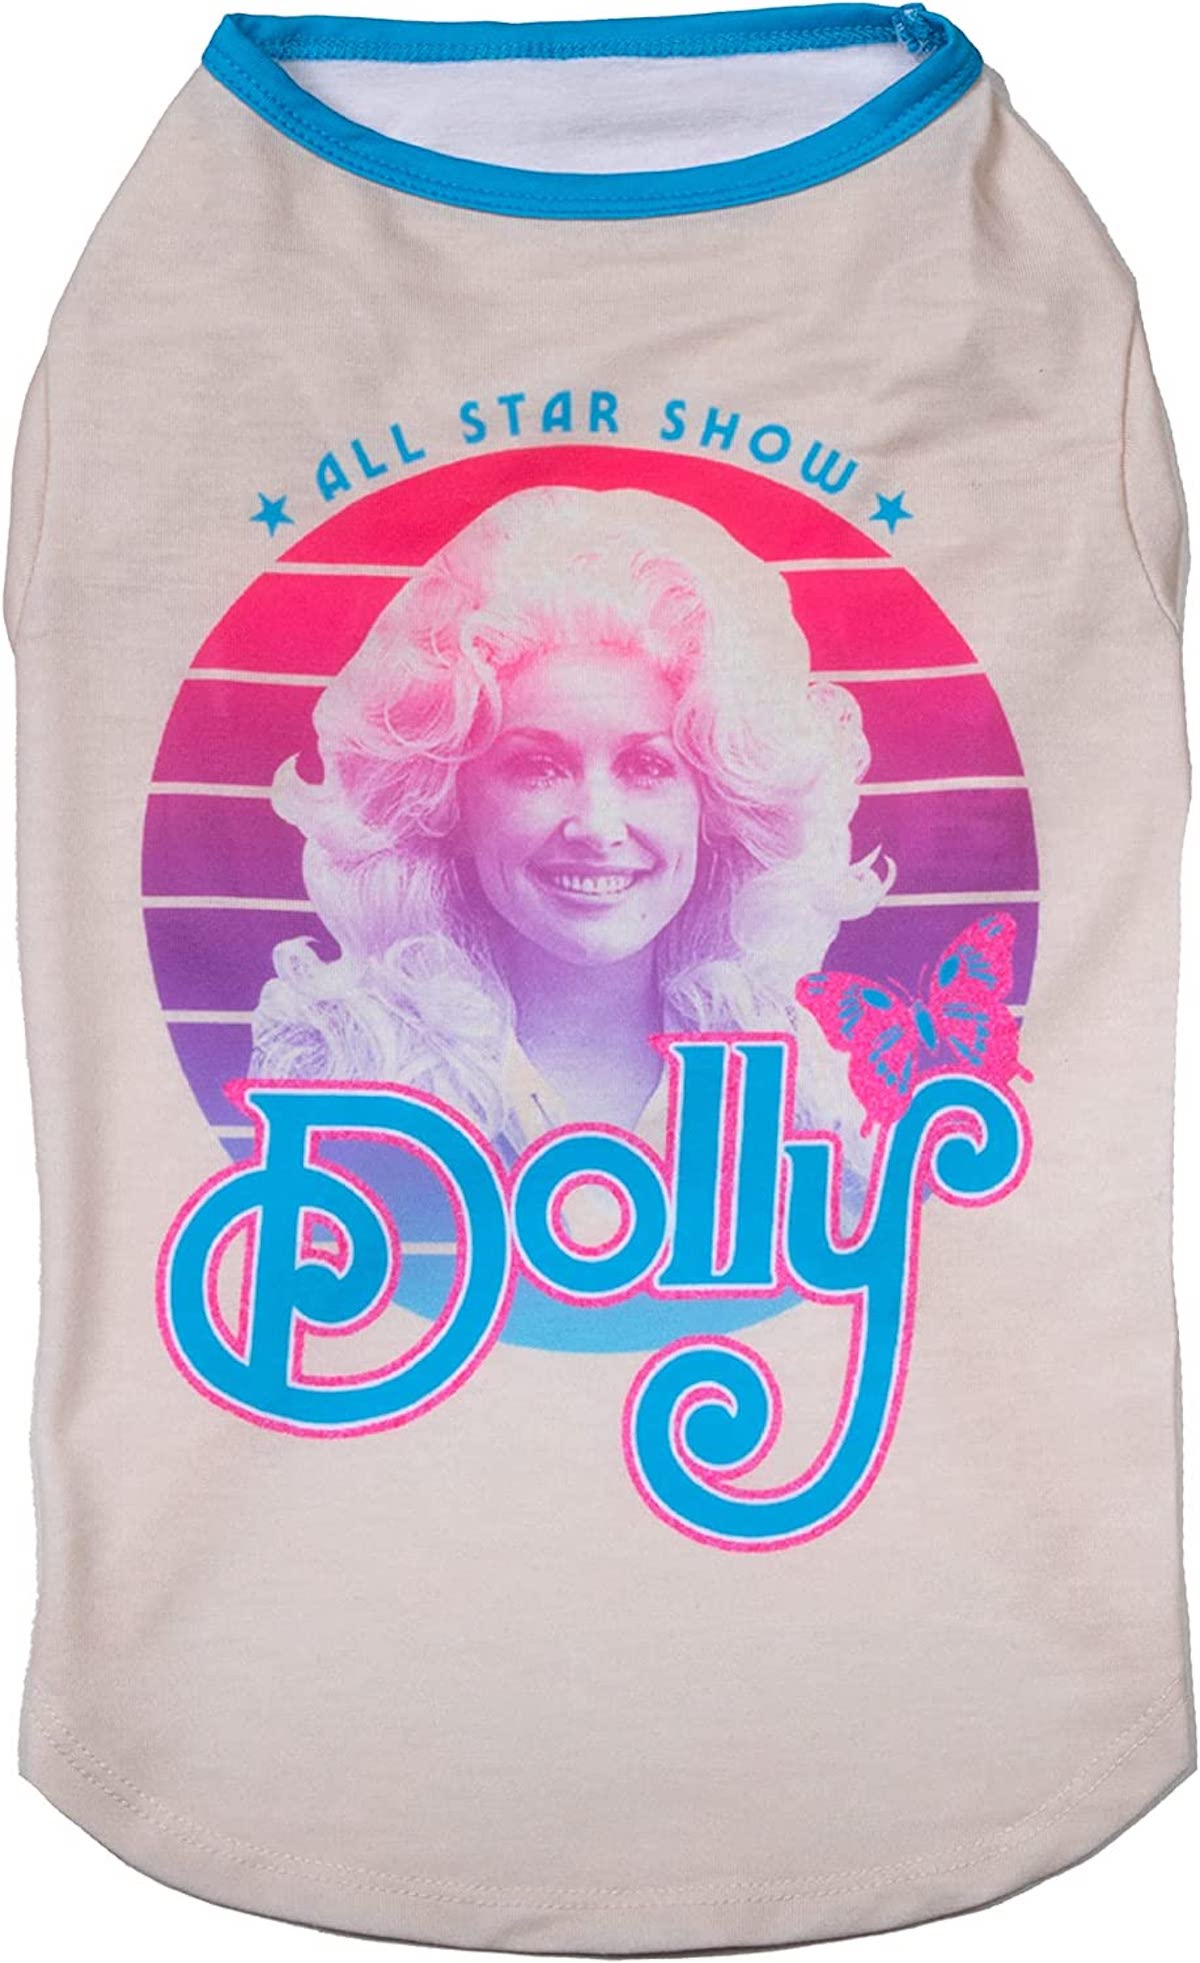 Dolly Parton köpek gömleği